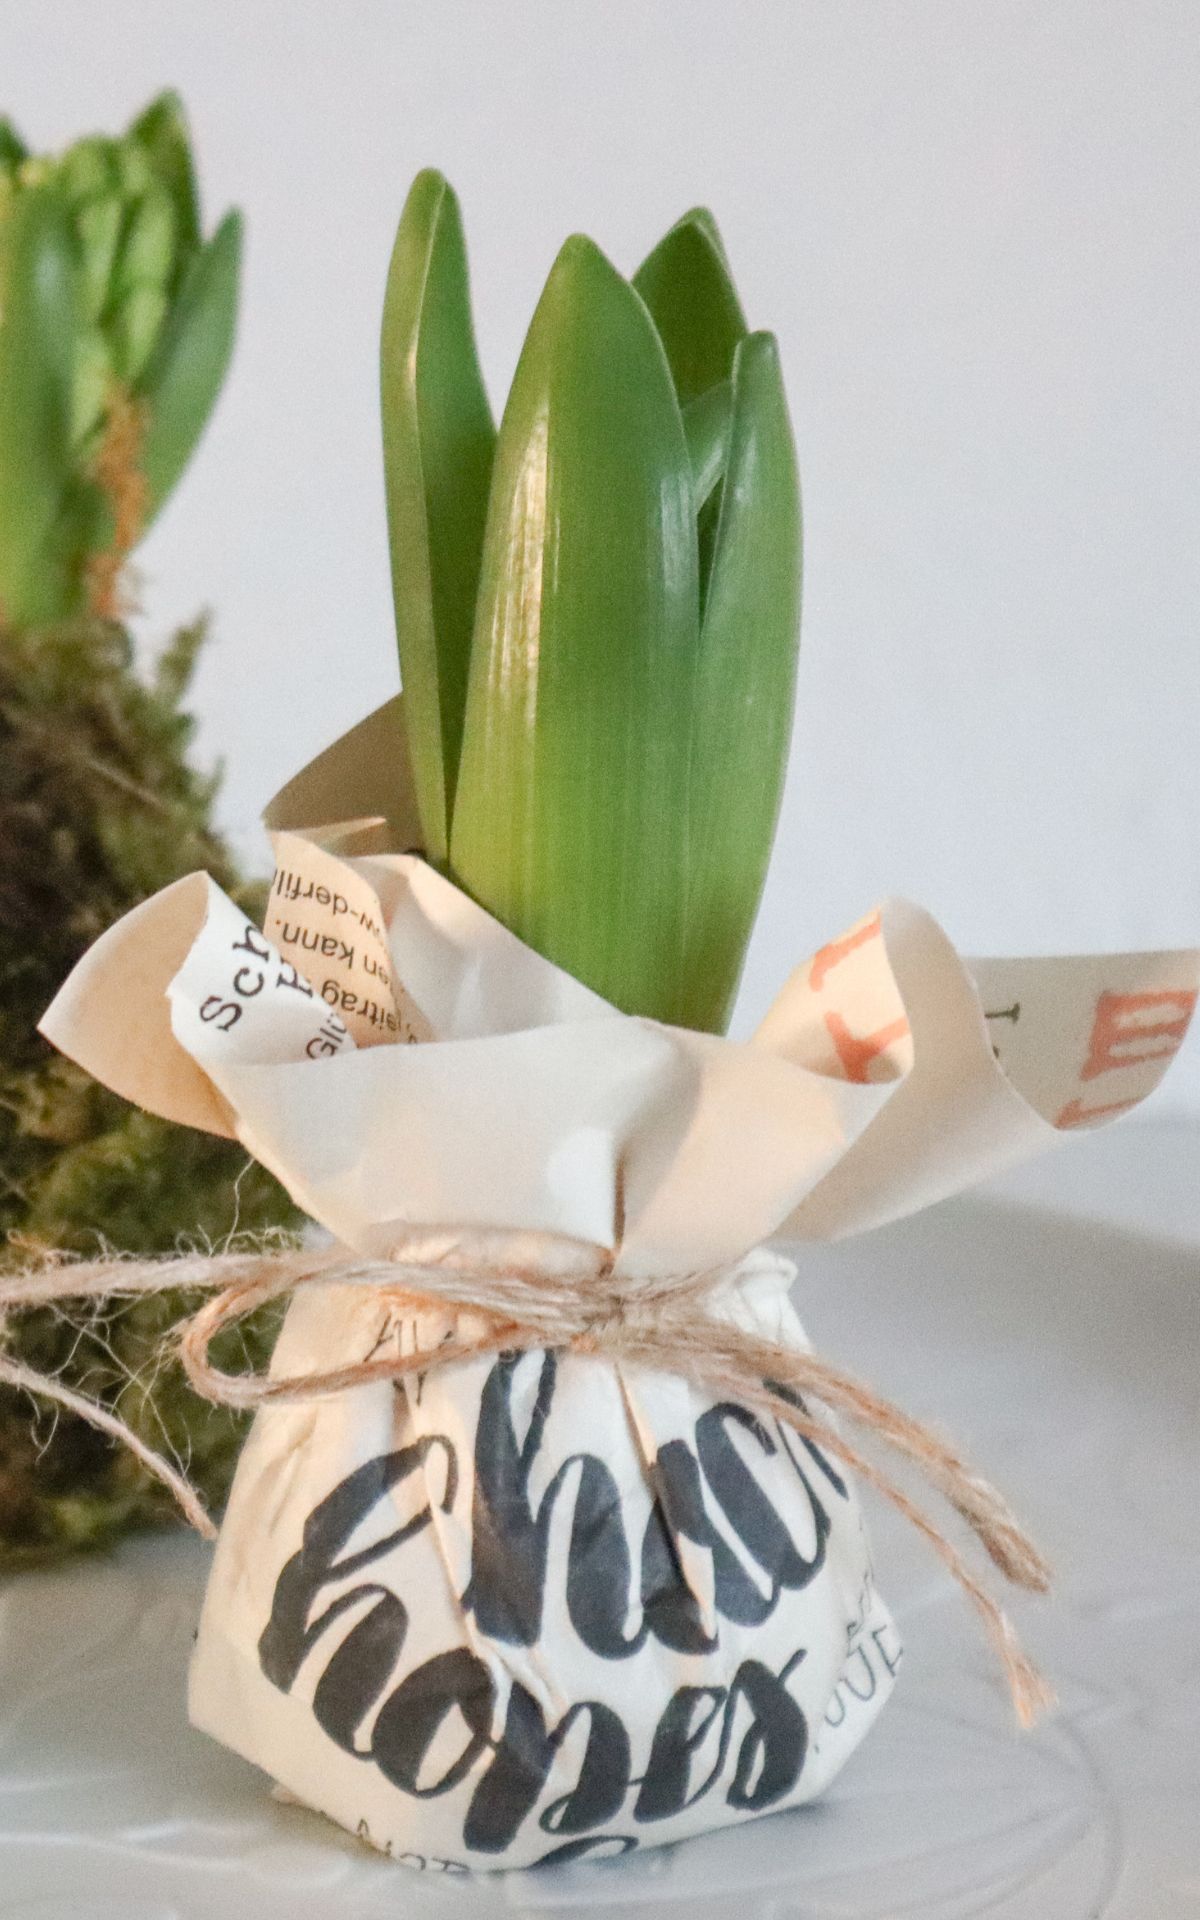 Nie wieder Blumen gießen mit Hyazinthen in Wachs, Moos und Papier! So machst du Wachs Hyazinthen einfach selber - auch mit anderen Blumenzwiebeln wie z.B. Amaryllis. Eine pflegeleichte DIY Frühlingsdeko & Geschenkidee. | Hyazinthen in Wachs, Moos und Papier - Meine DIY Frühlingsdeko bekannt aus SWR Kaffee oder Tee